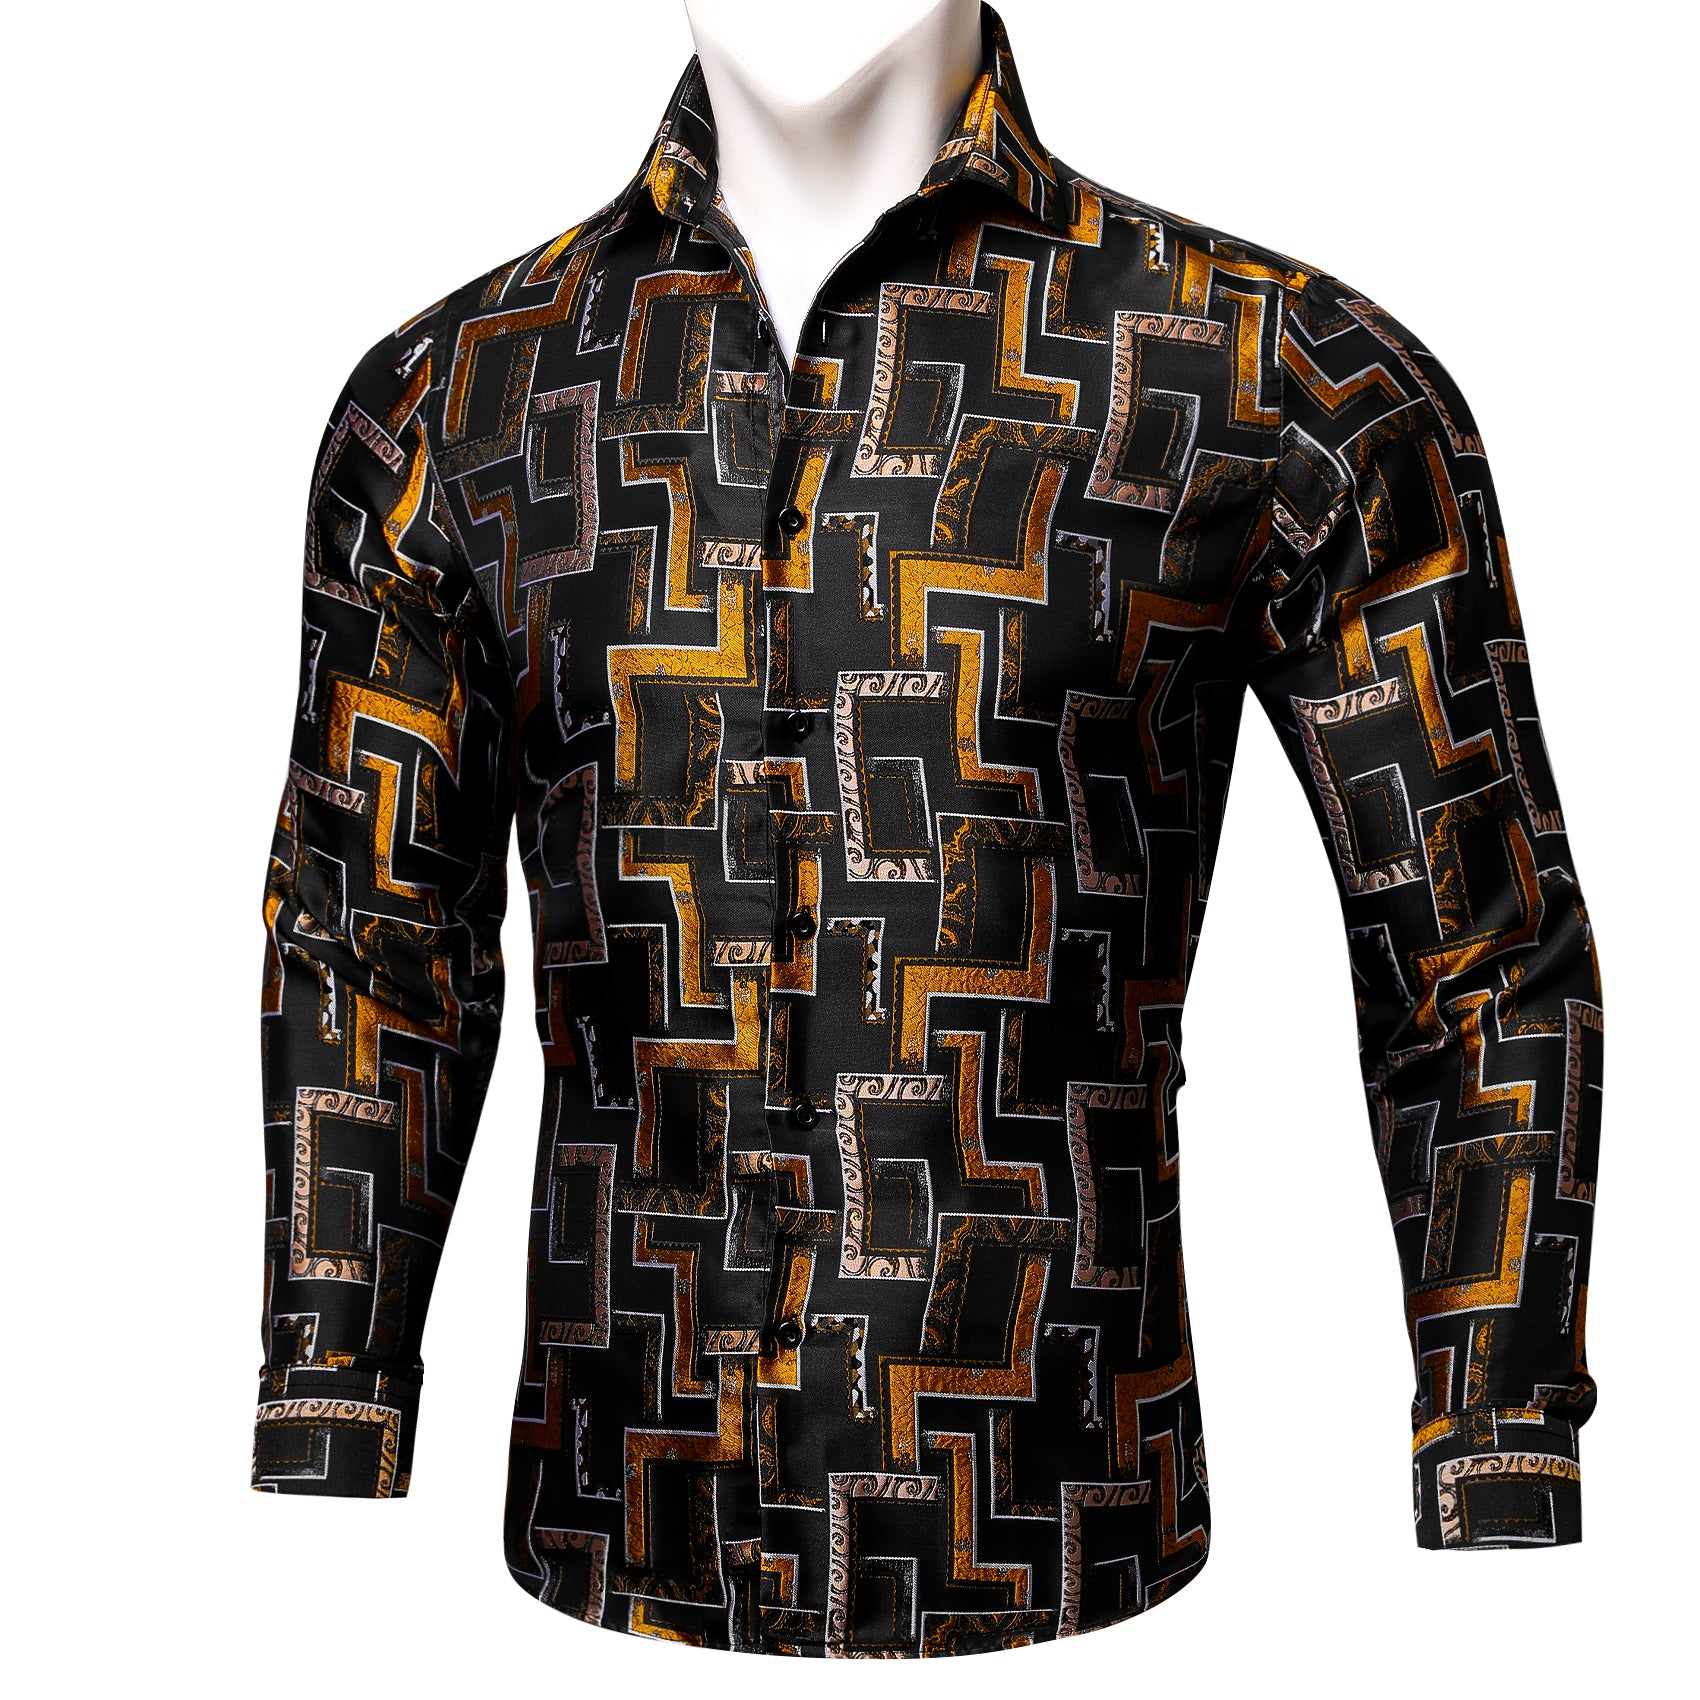 Barry.wang New Black Golden Paisley Silk Geometric Button Up Shirt